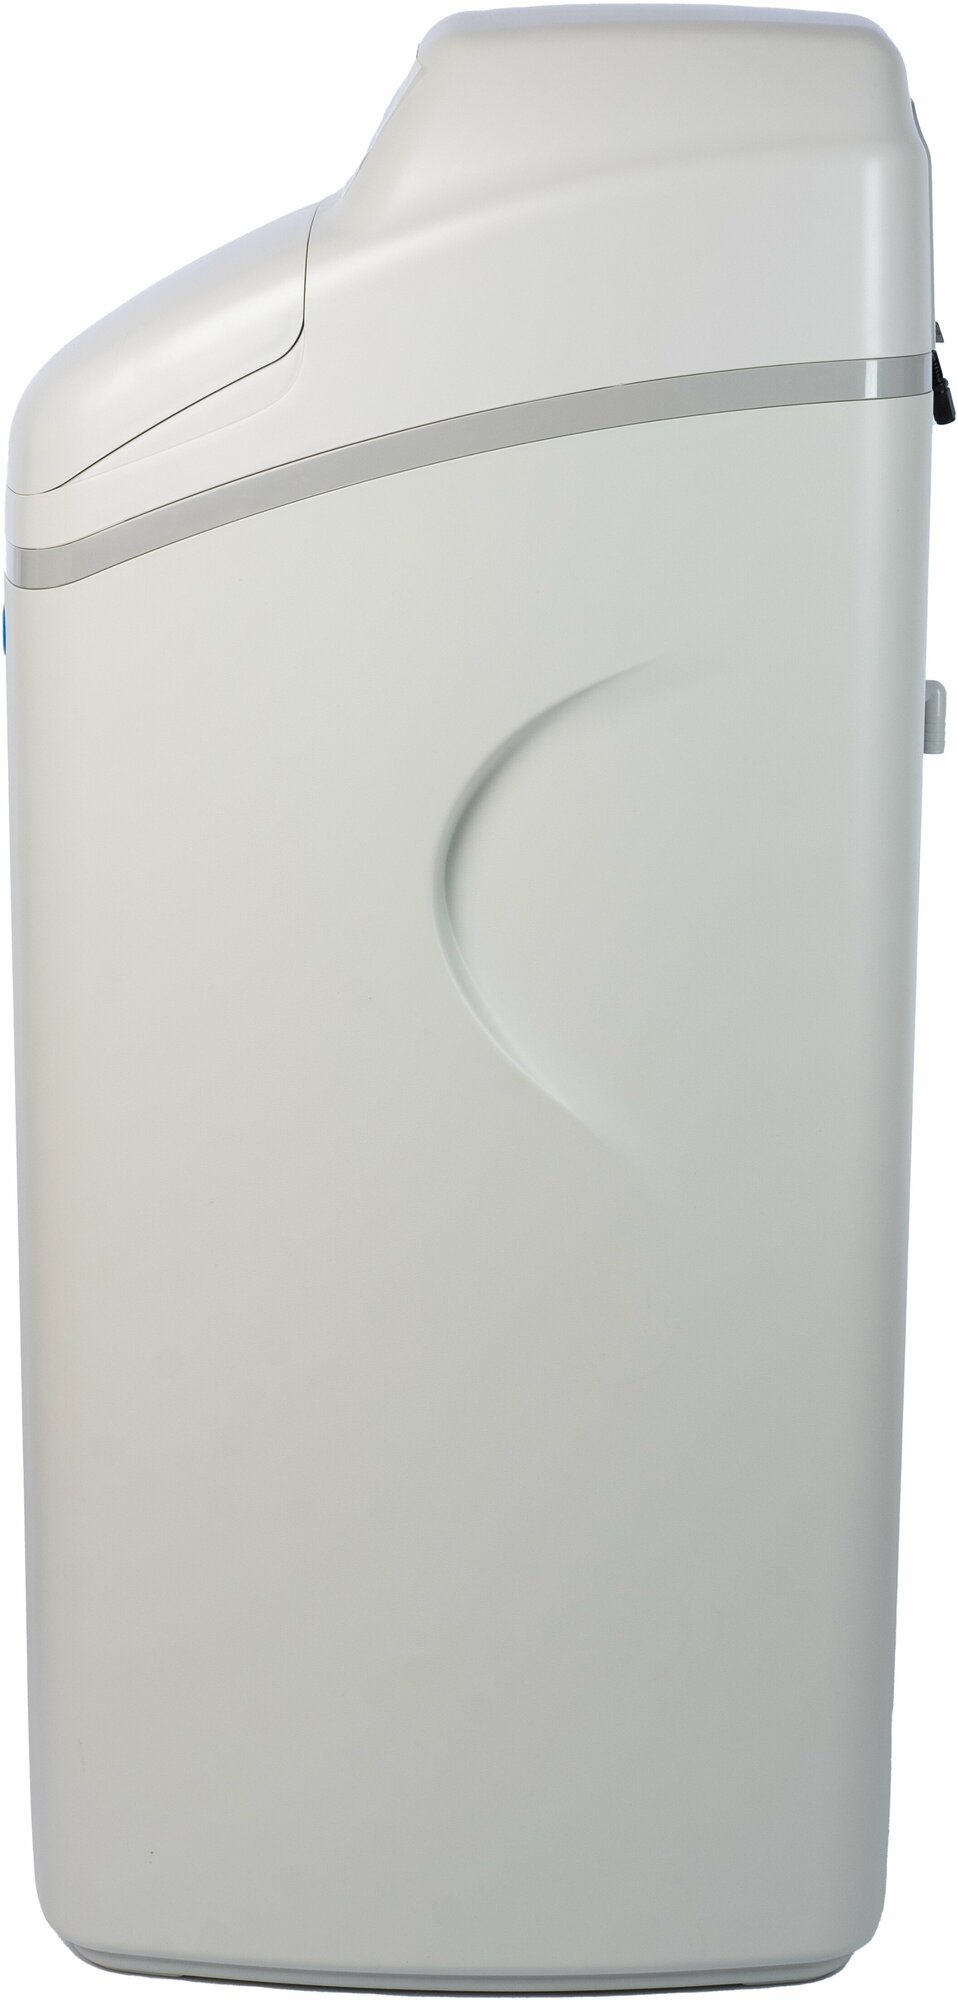 Магистральный фильтр для воды Гейзер-Aquachief 1035 RX Cabinet (R1500H), фильтр для воды кабинетного типа, водоочиститель до 1700 л/ч - фотография № 3